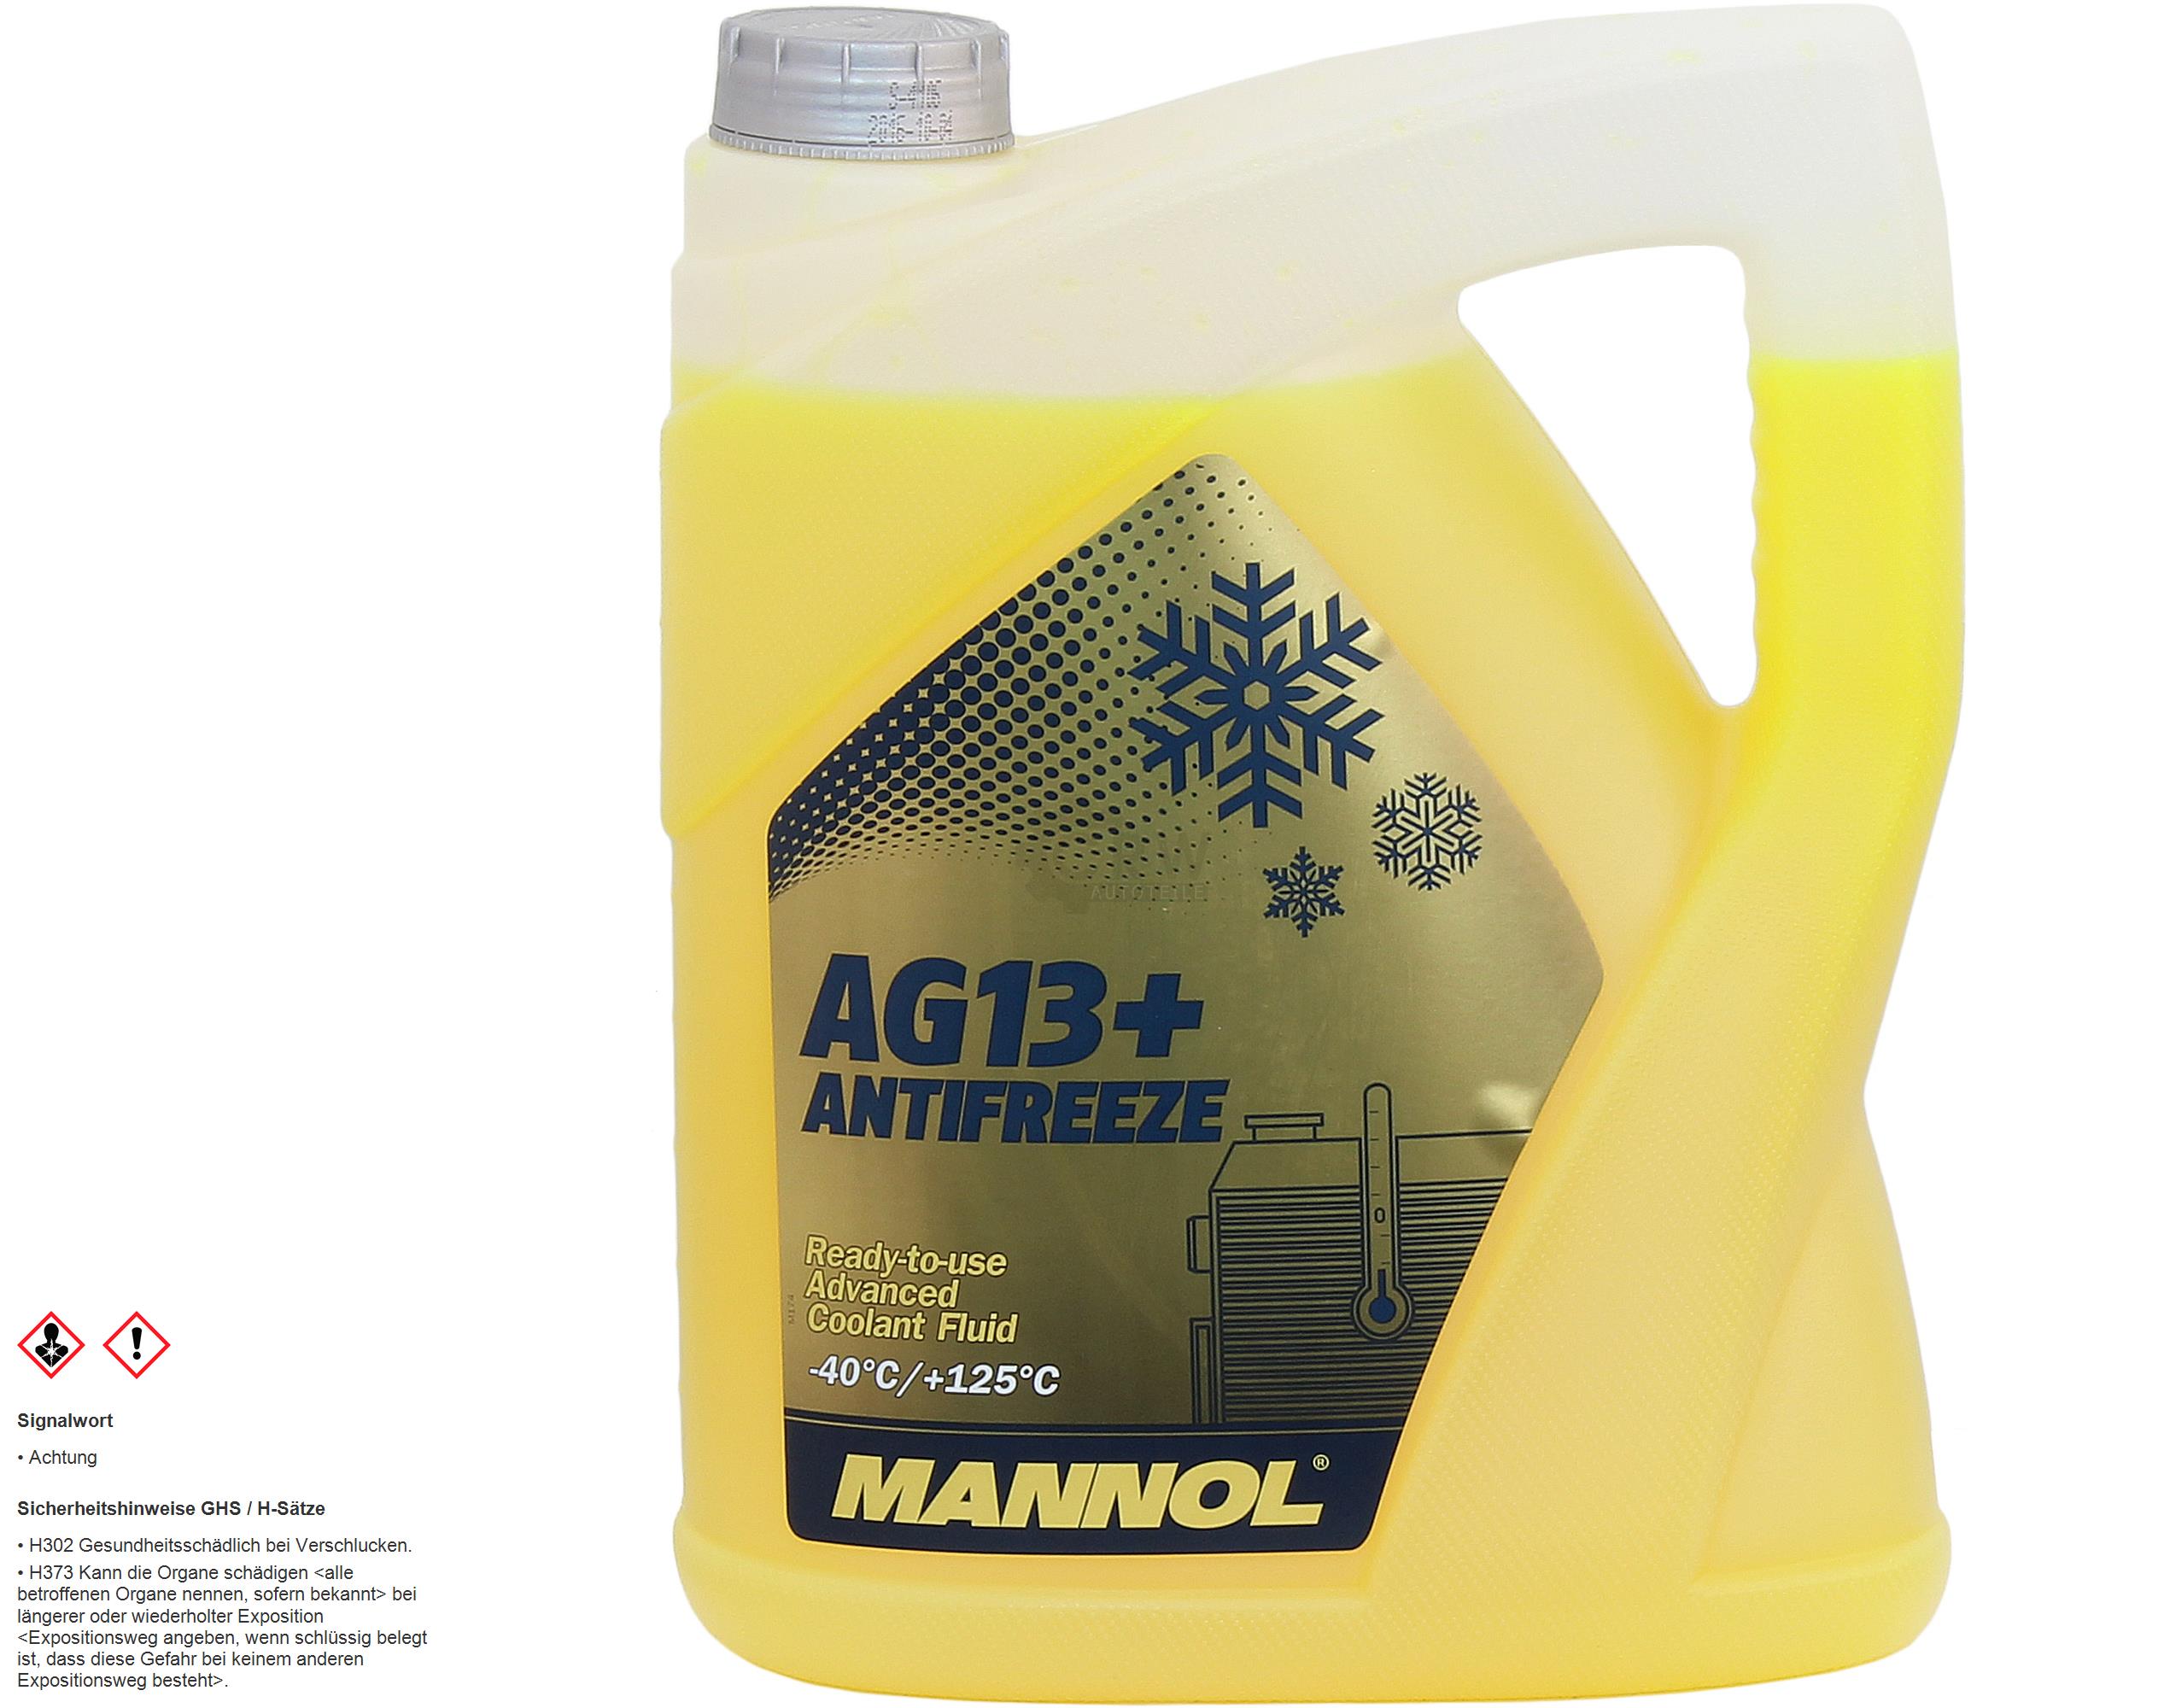 5 Liter MANNOL Kühlerfrostschutz Fertiggemisch Antifreeze AG13+ -40°C Gelb G13+